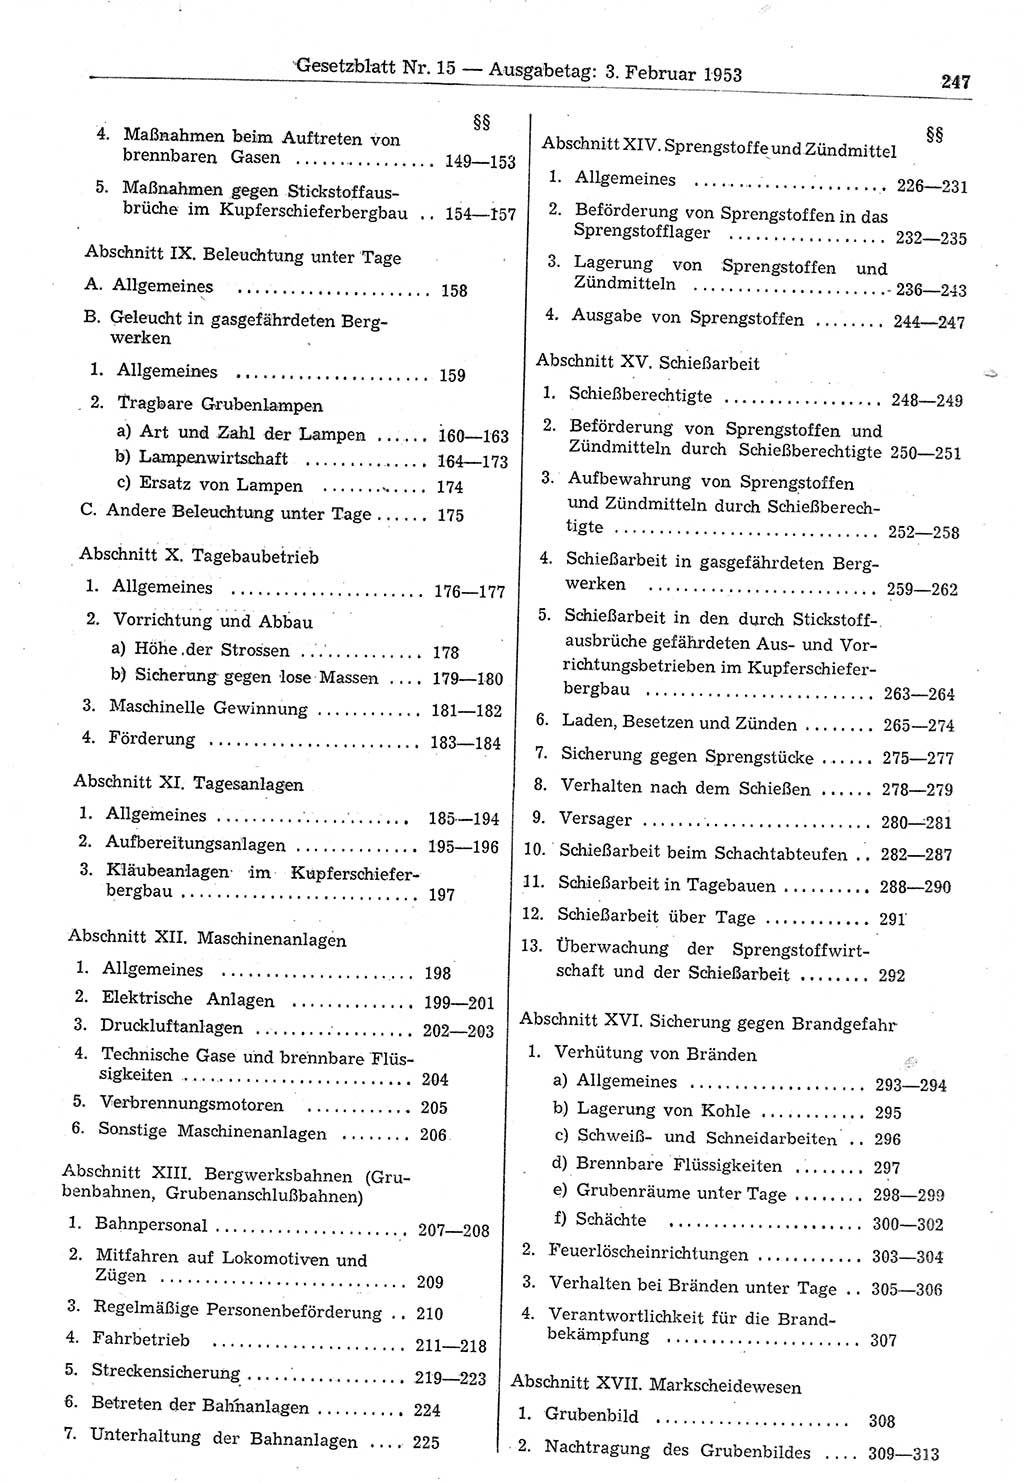 Gesetzblatt (GBl.) der Deutschen Demokratischen Republik (DDR) 1953, Seite 247 (GBl. DDR 1953, S. 247)